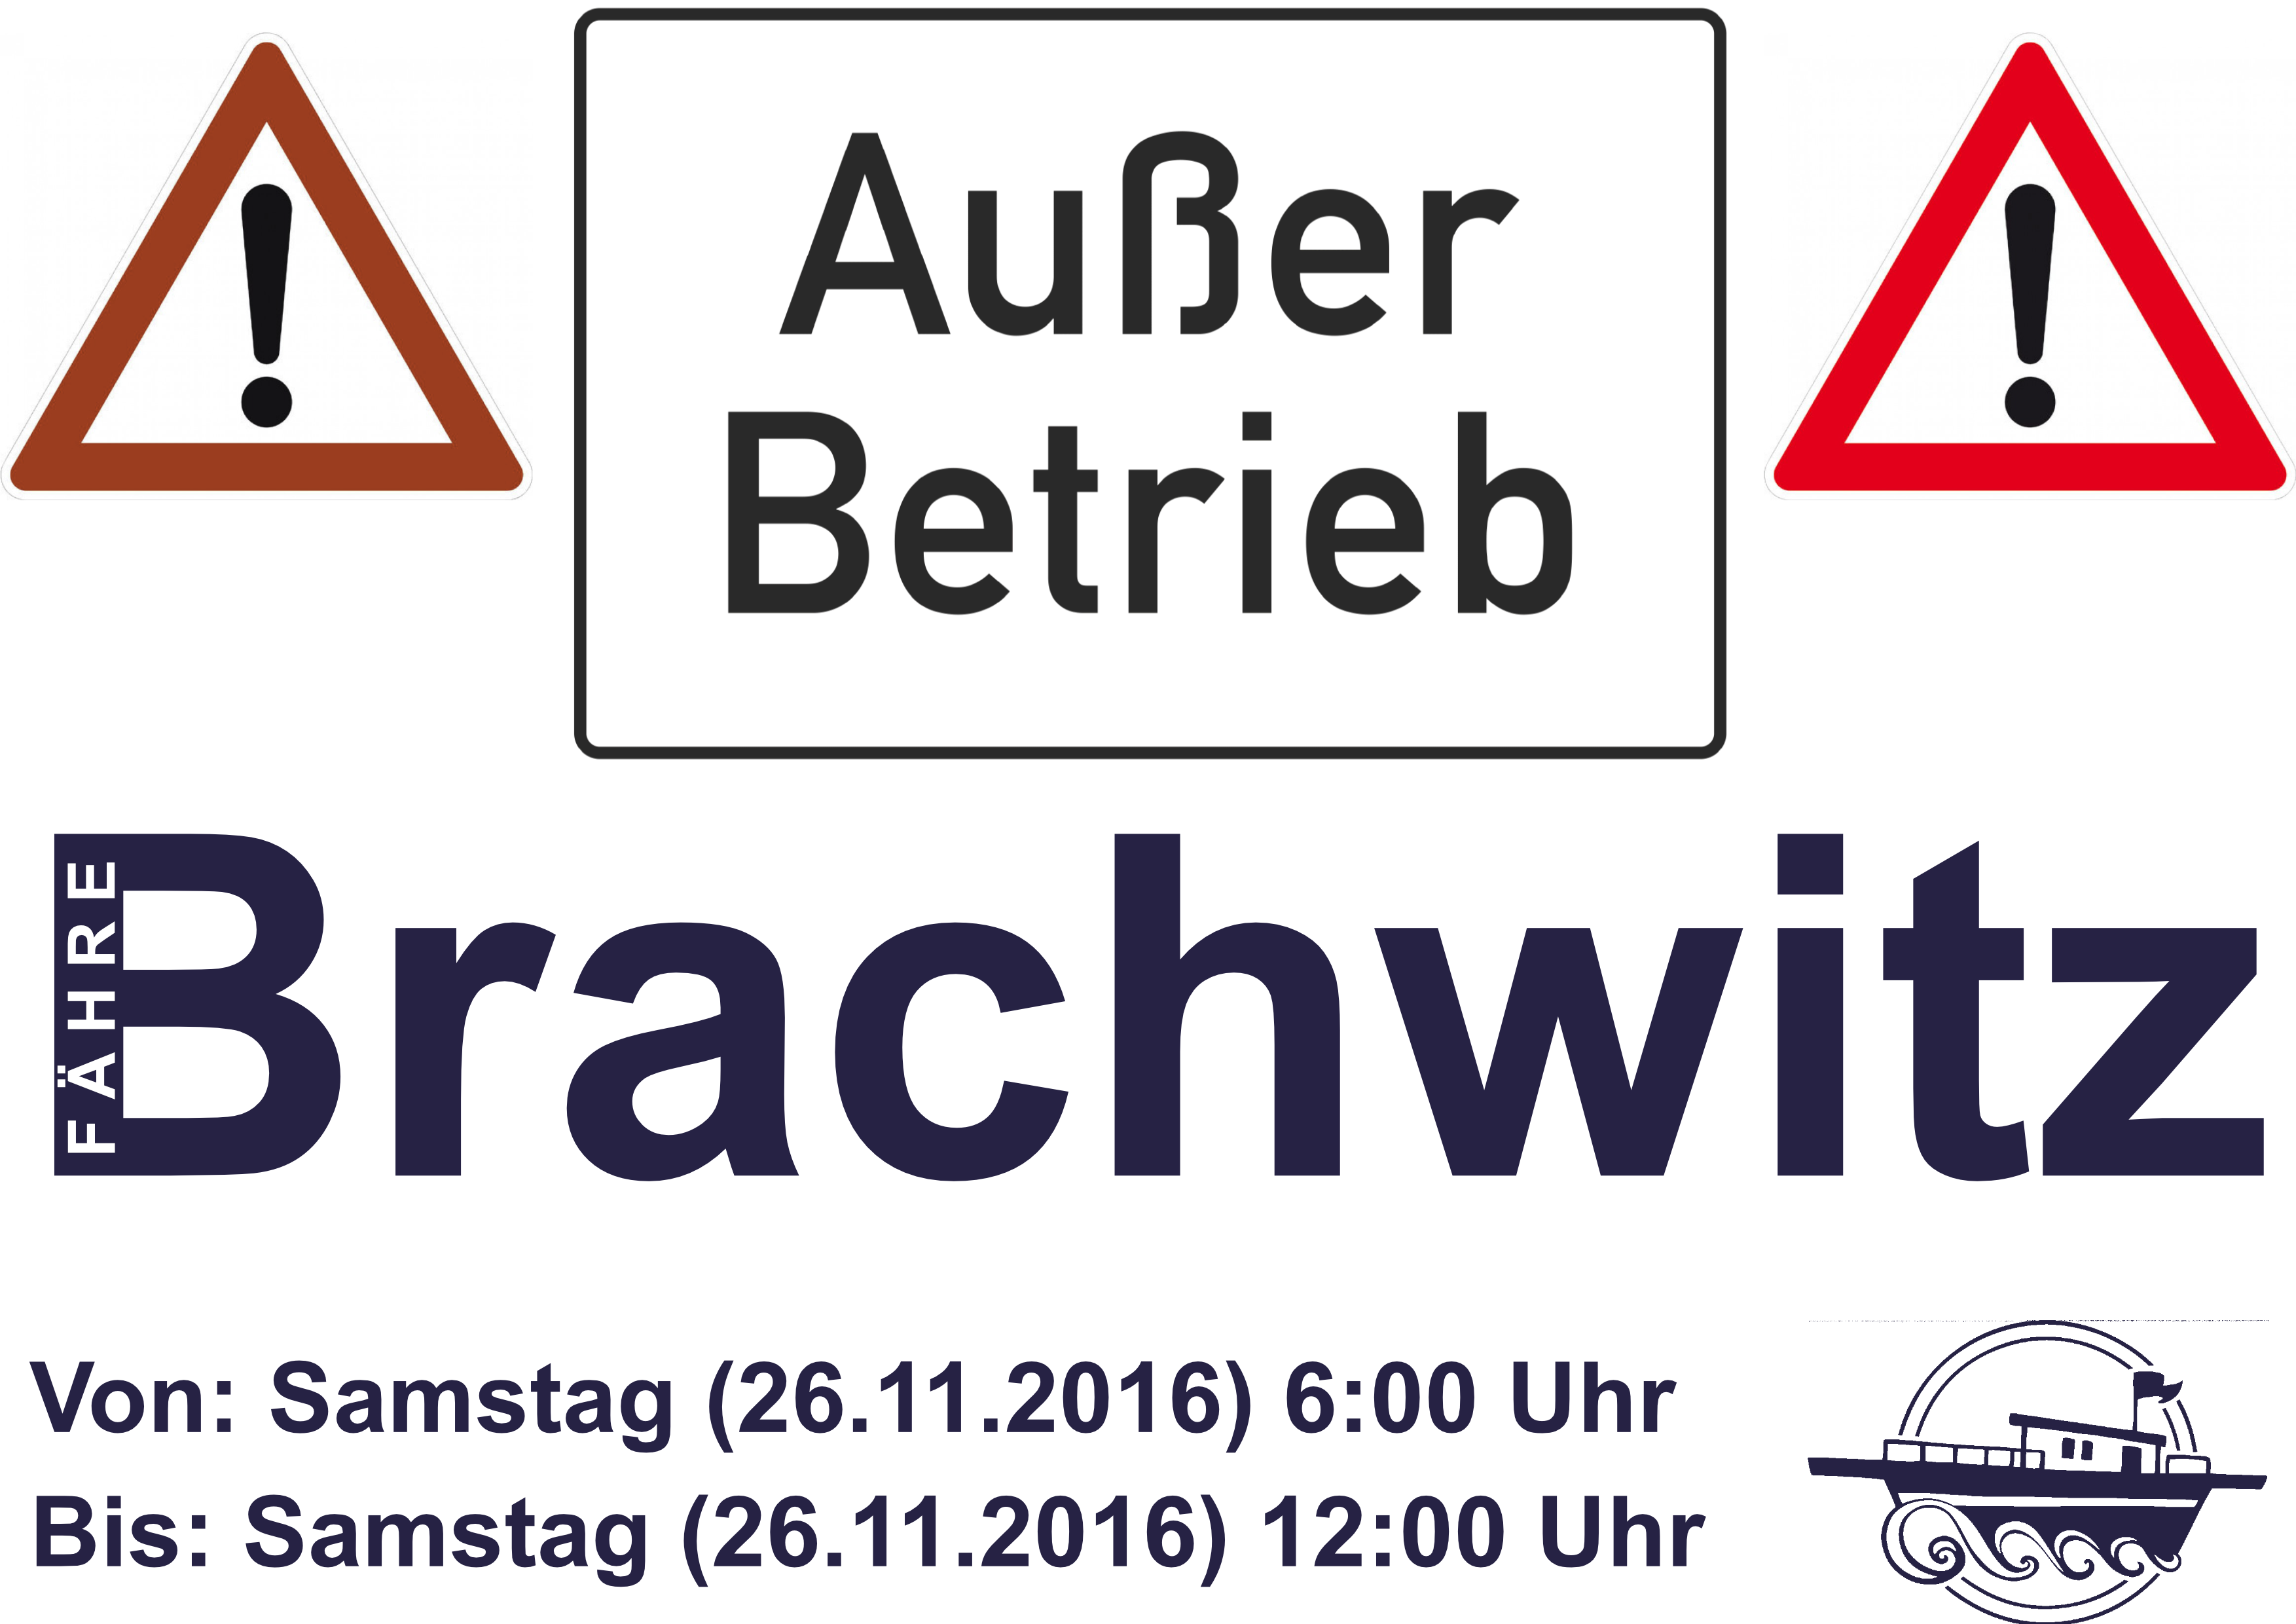 Fähre Brachwitz außer Betrieb 26.11.2016